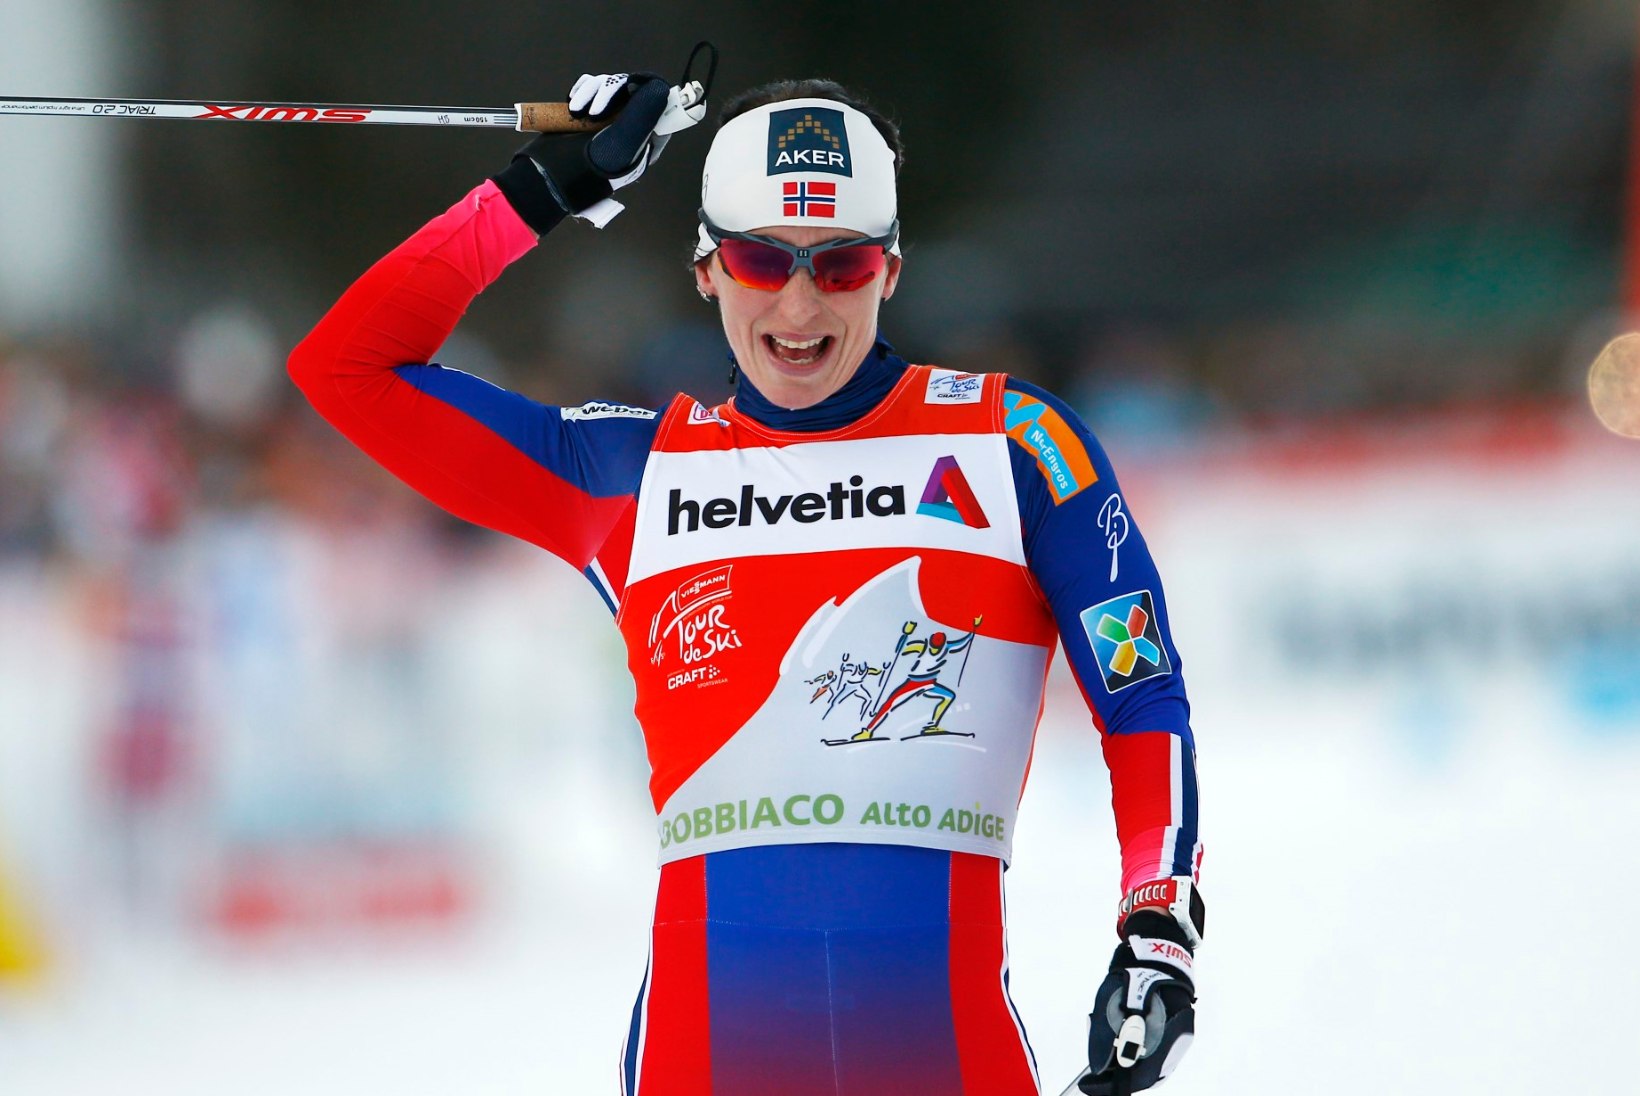 Tehtud! Marit Björgen võttis esimest korda Tour de Ski üldvõidu